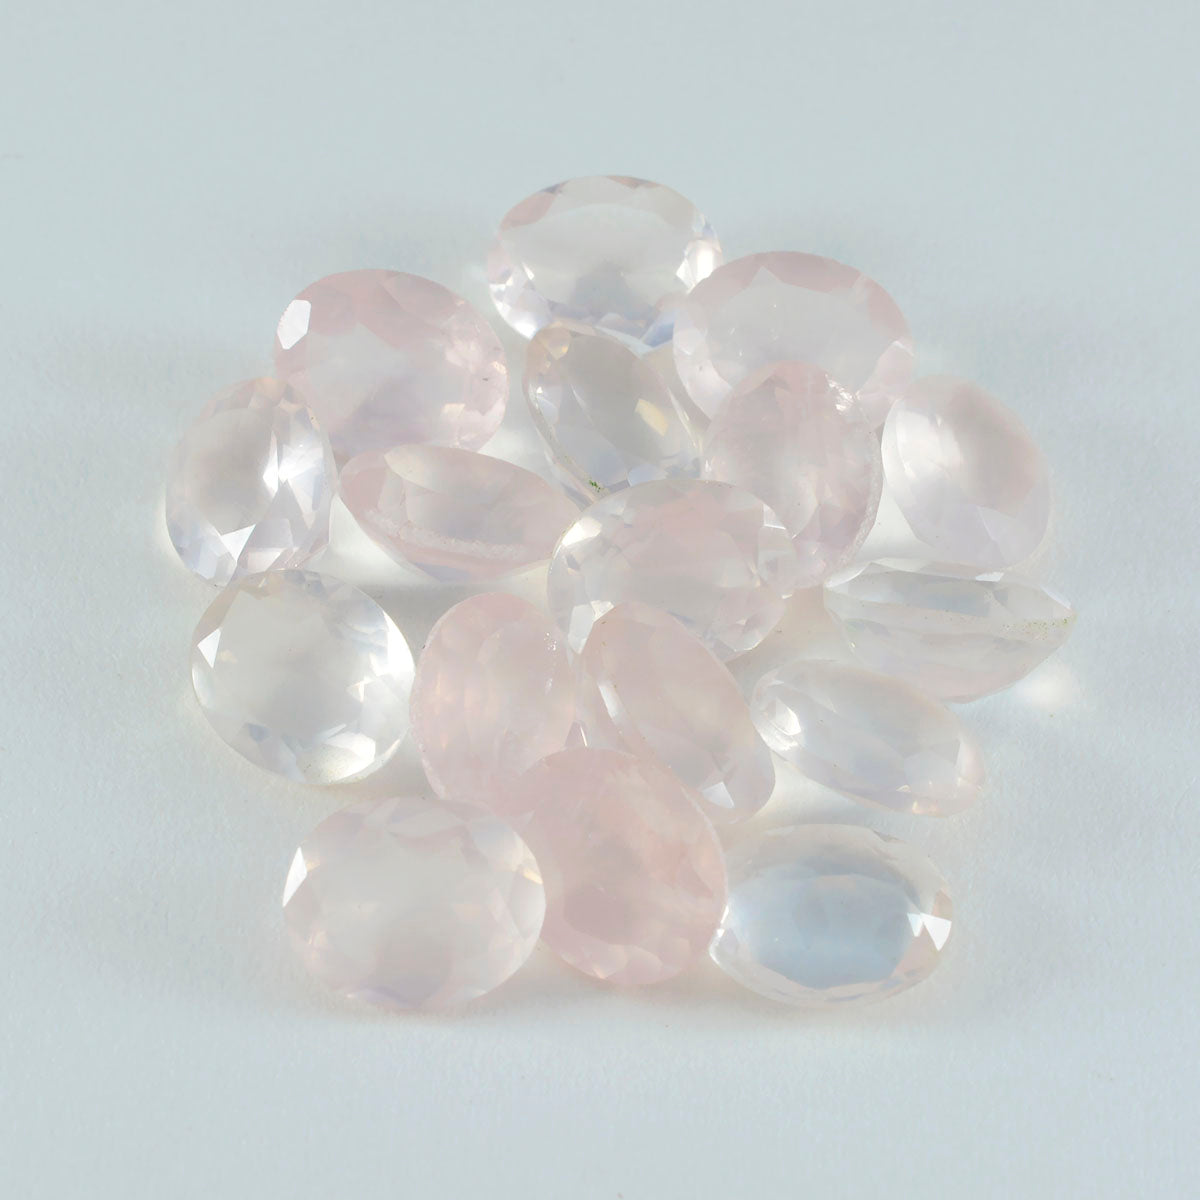 riyogems 1 шт. розовый кварц ограненный 9x11 мм овальной формы красивый качественный свободный драгоценный камень